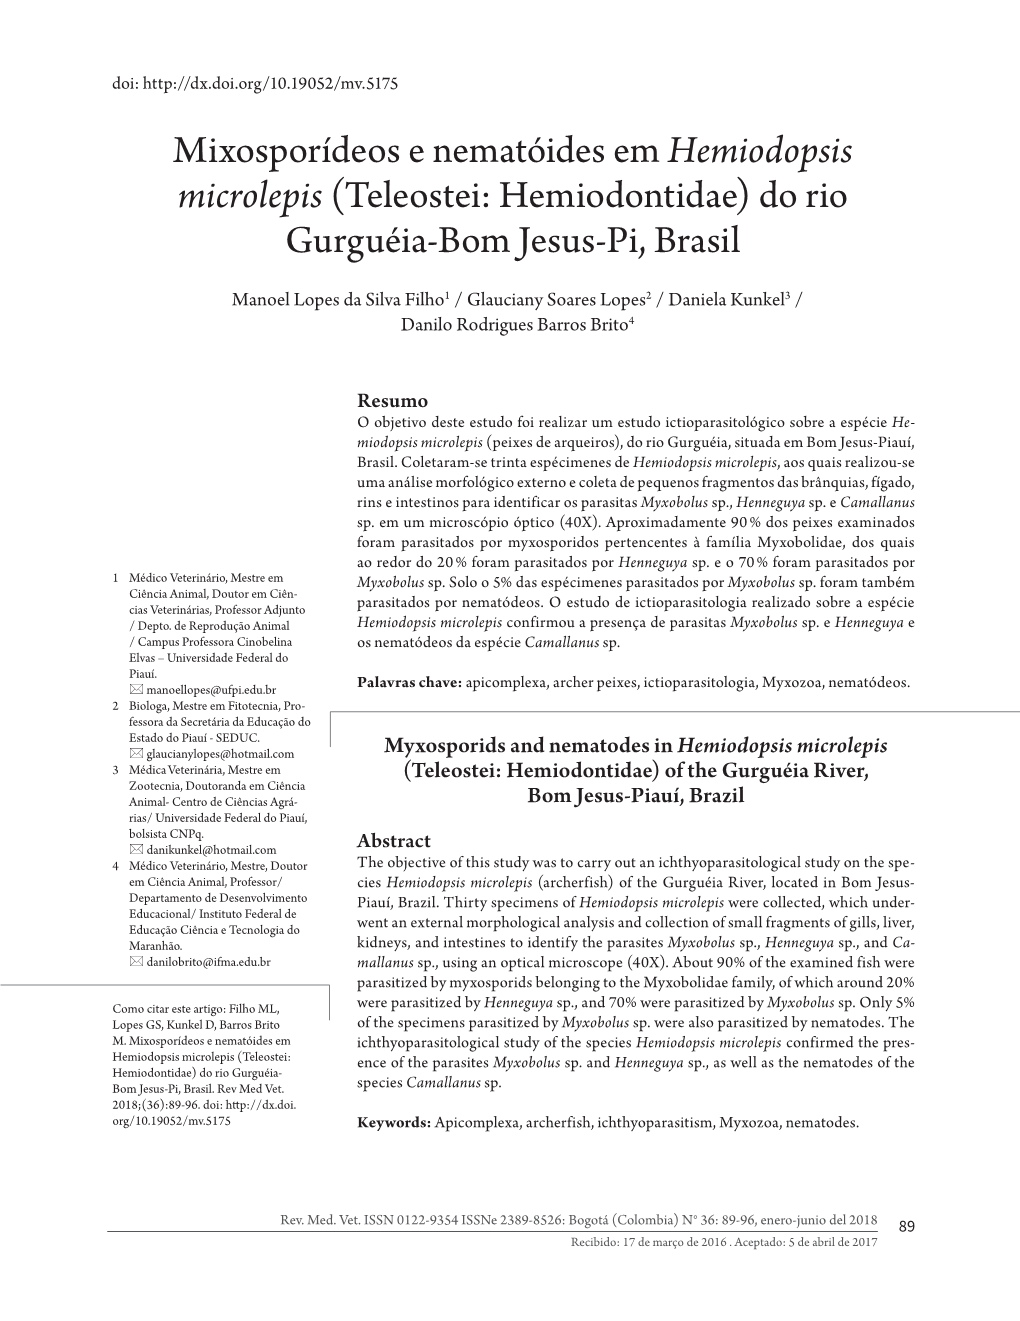 Mixosporídeos E Nematóides Em Hemiodopsis Microlepis (Teleostei: Hemiodontidae) Do Rio Gurguéia-Bom Jesus-Pi, Brasil